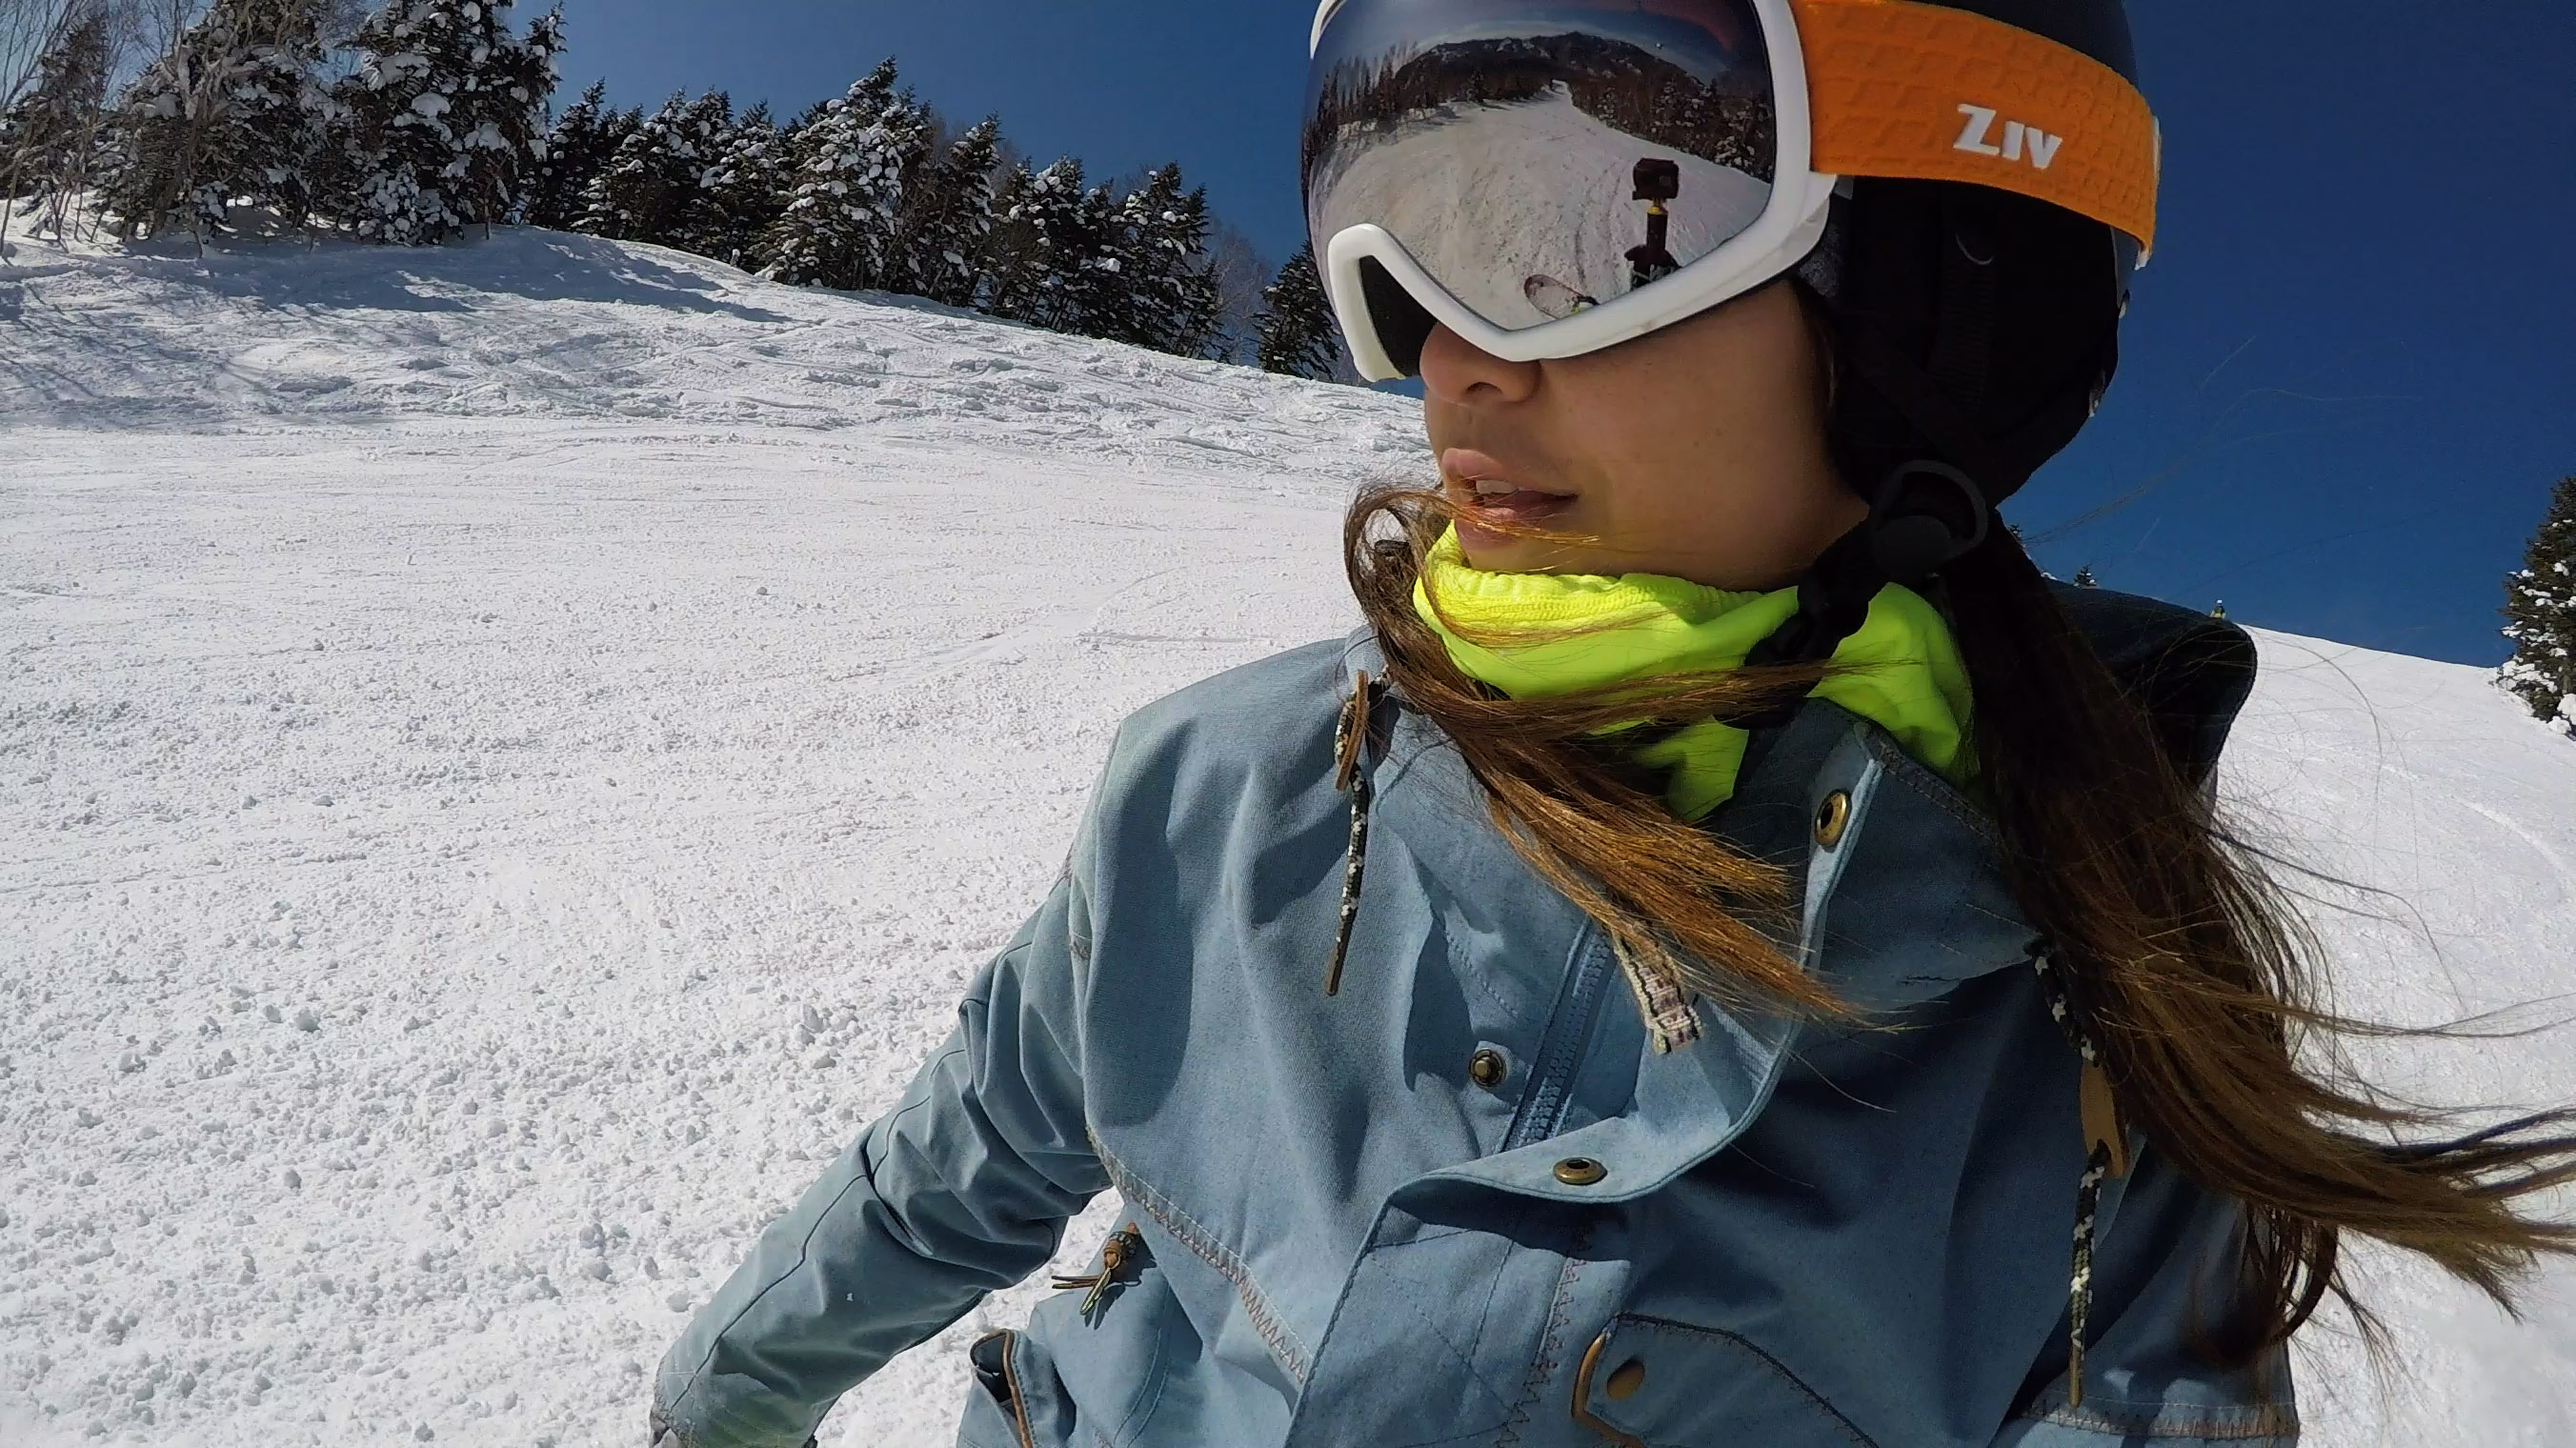 戴著ZIV雪鏡的長髮年輕女孩，正在滑雪